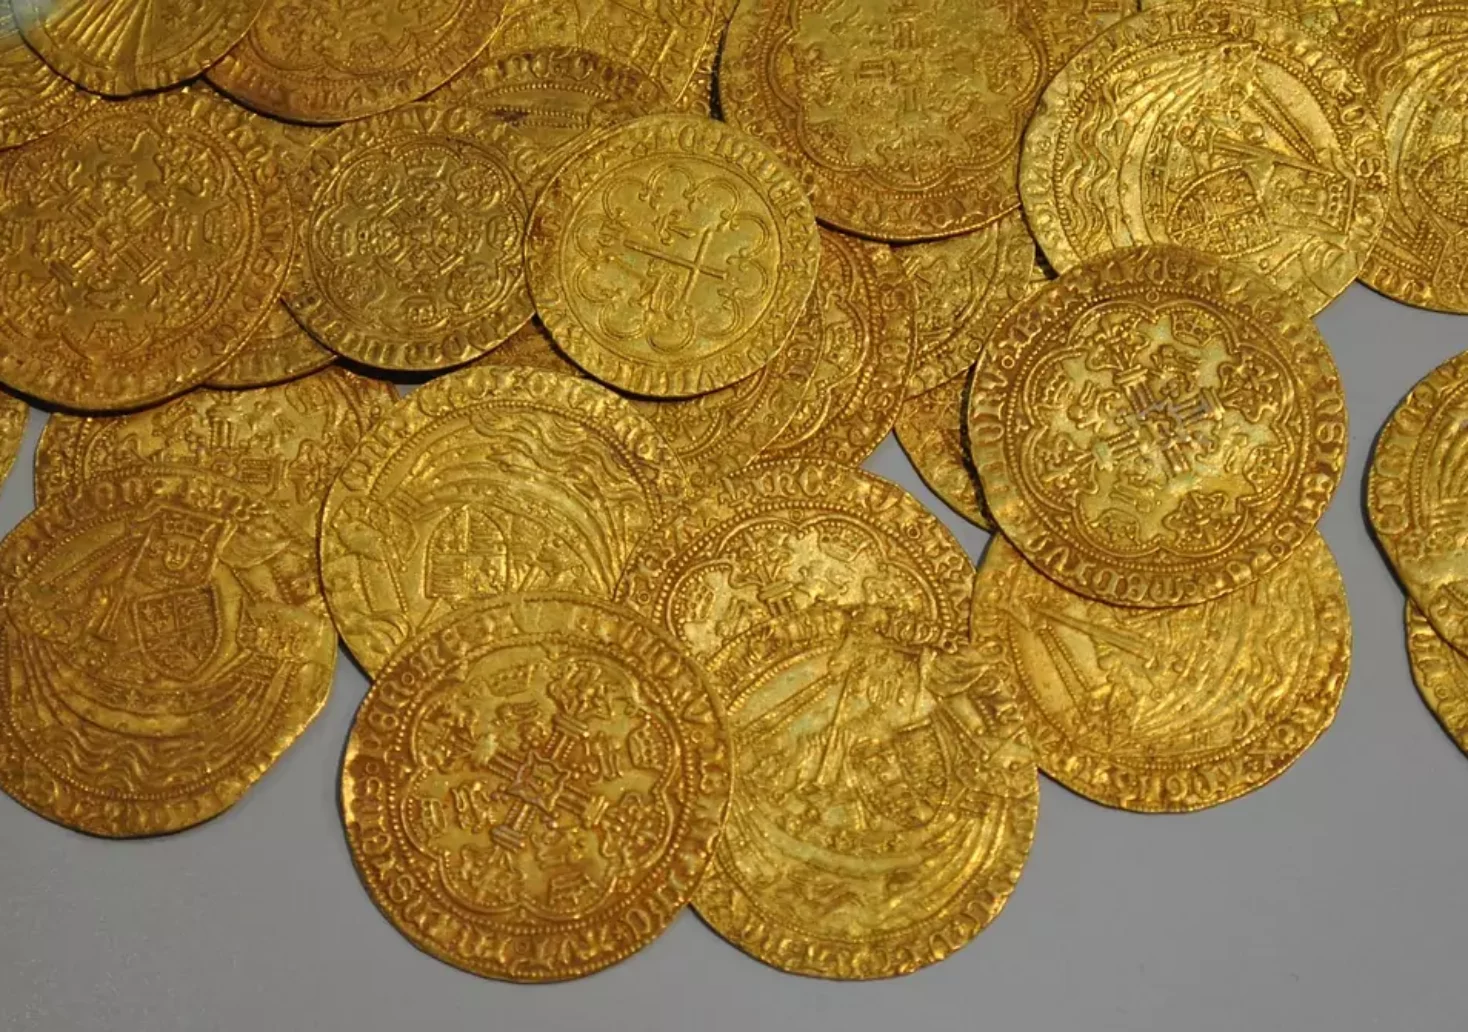 Bild auf 5min.at zeigt Goldmünzen.